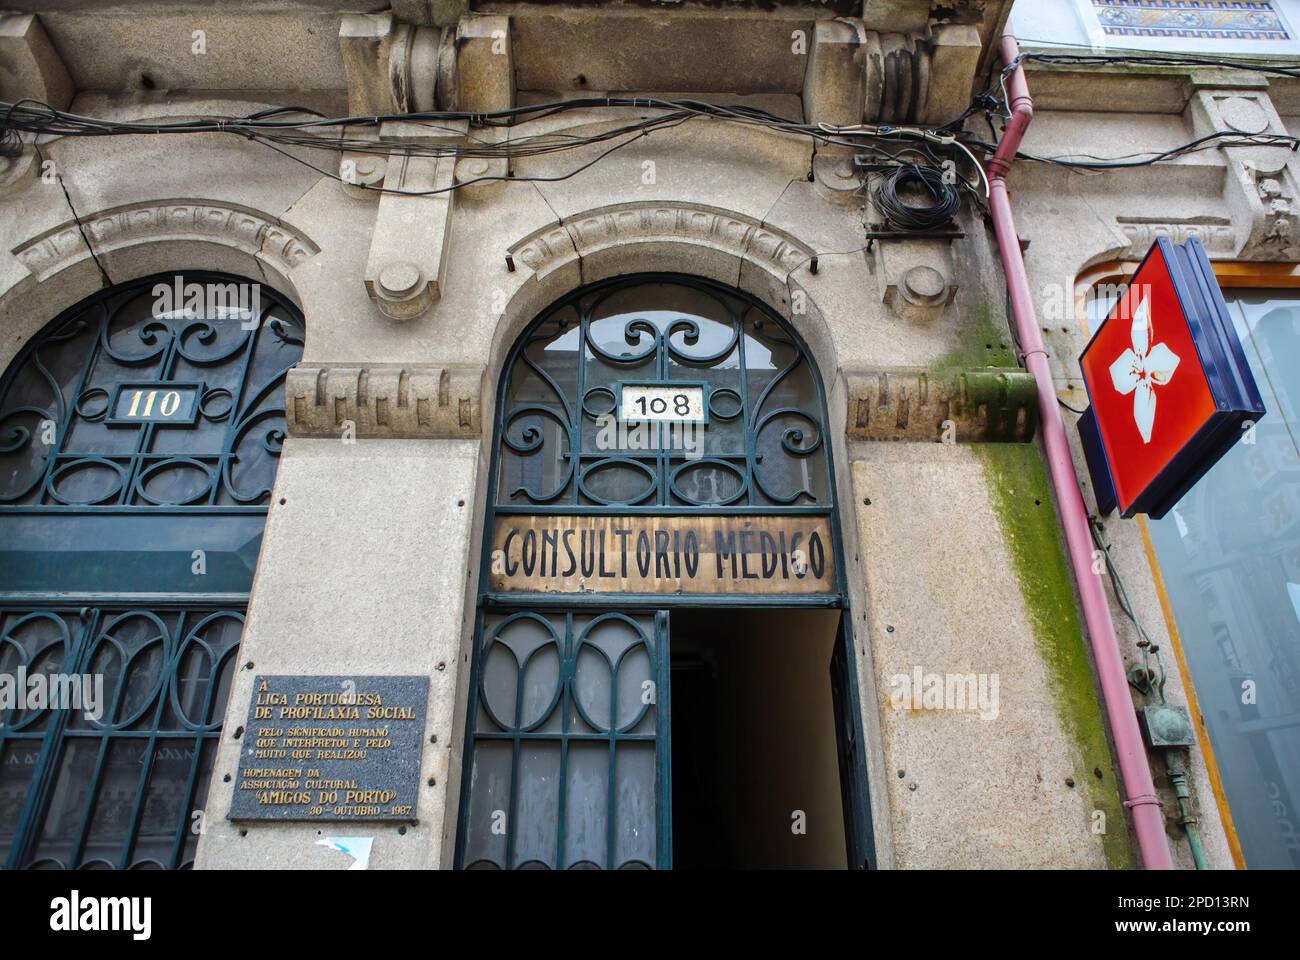 Porto, Portugal - 3 juin 2014 : entrée principale du bureau des médecins avec une grande inscription sur la façade Consultorio Medico dans le centre du Portugal Banque D'Images